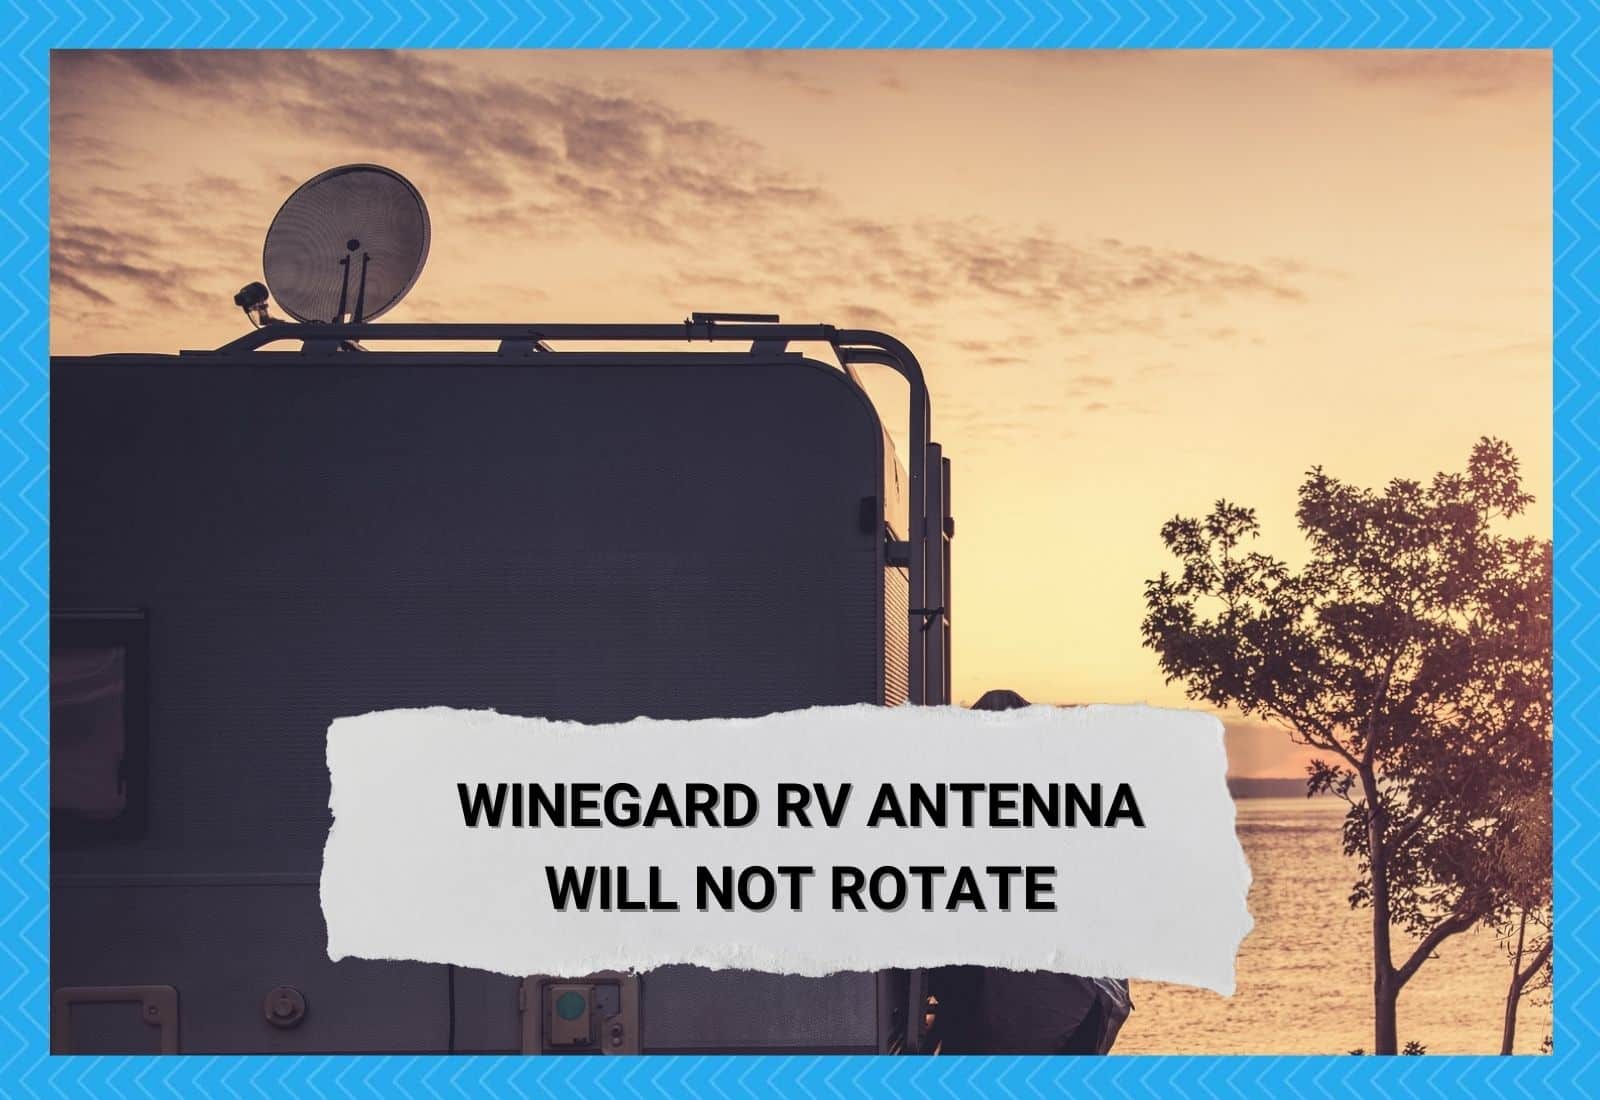 Winegard RV Antenna Will Not Rotate